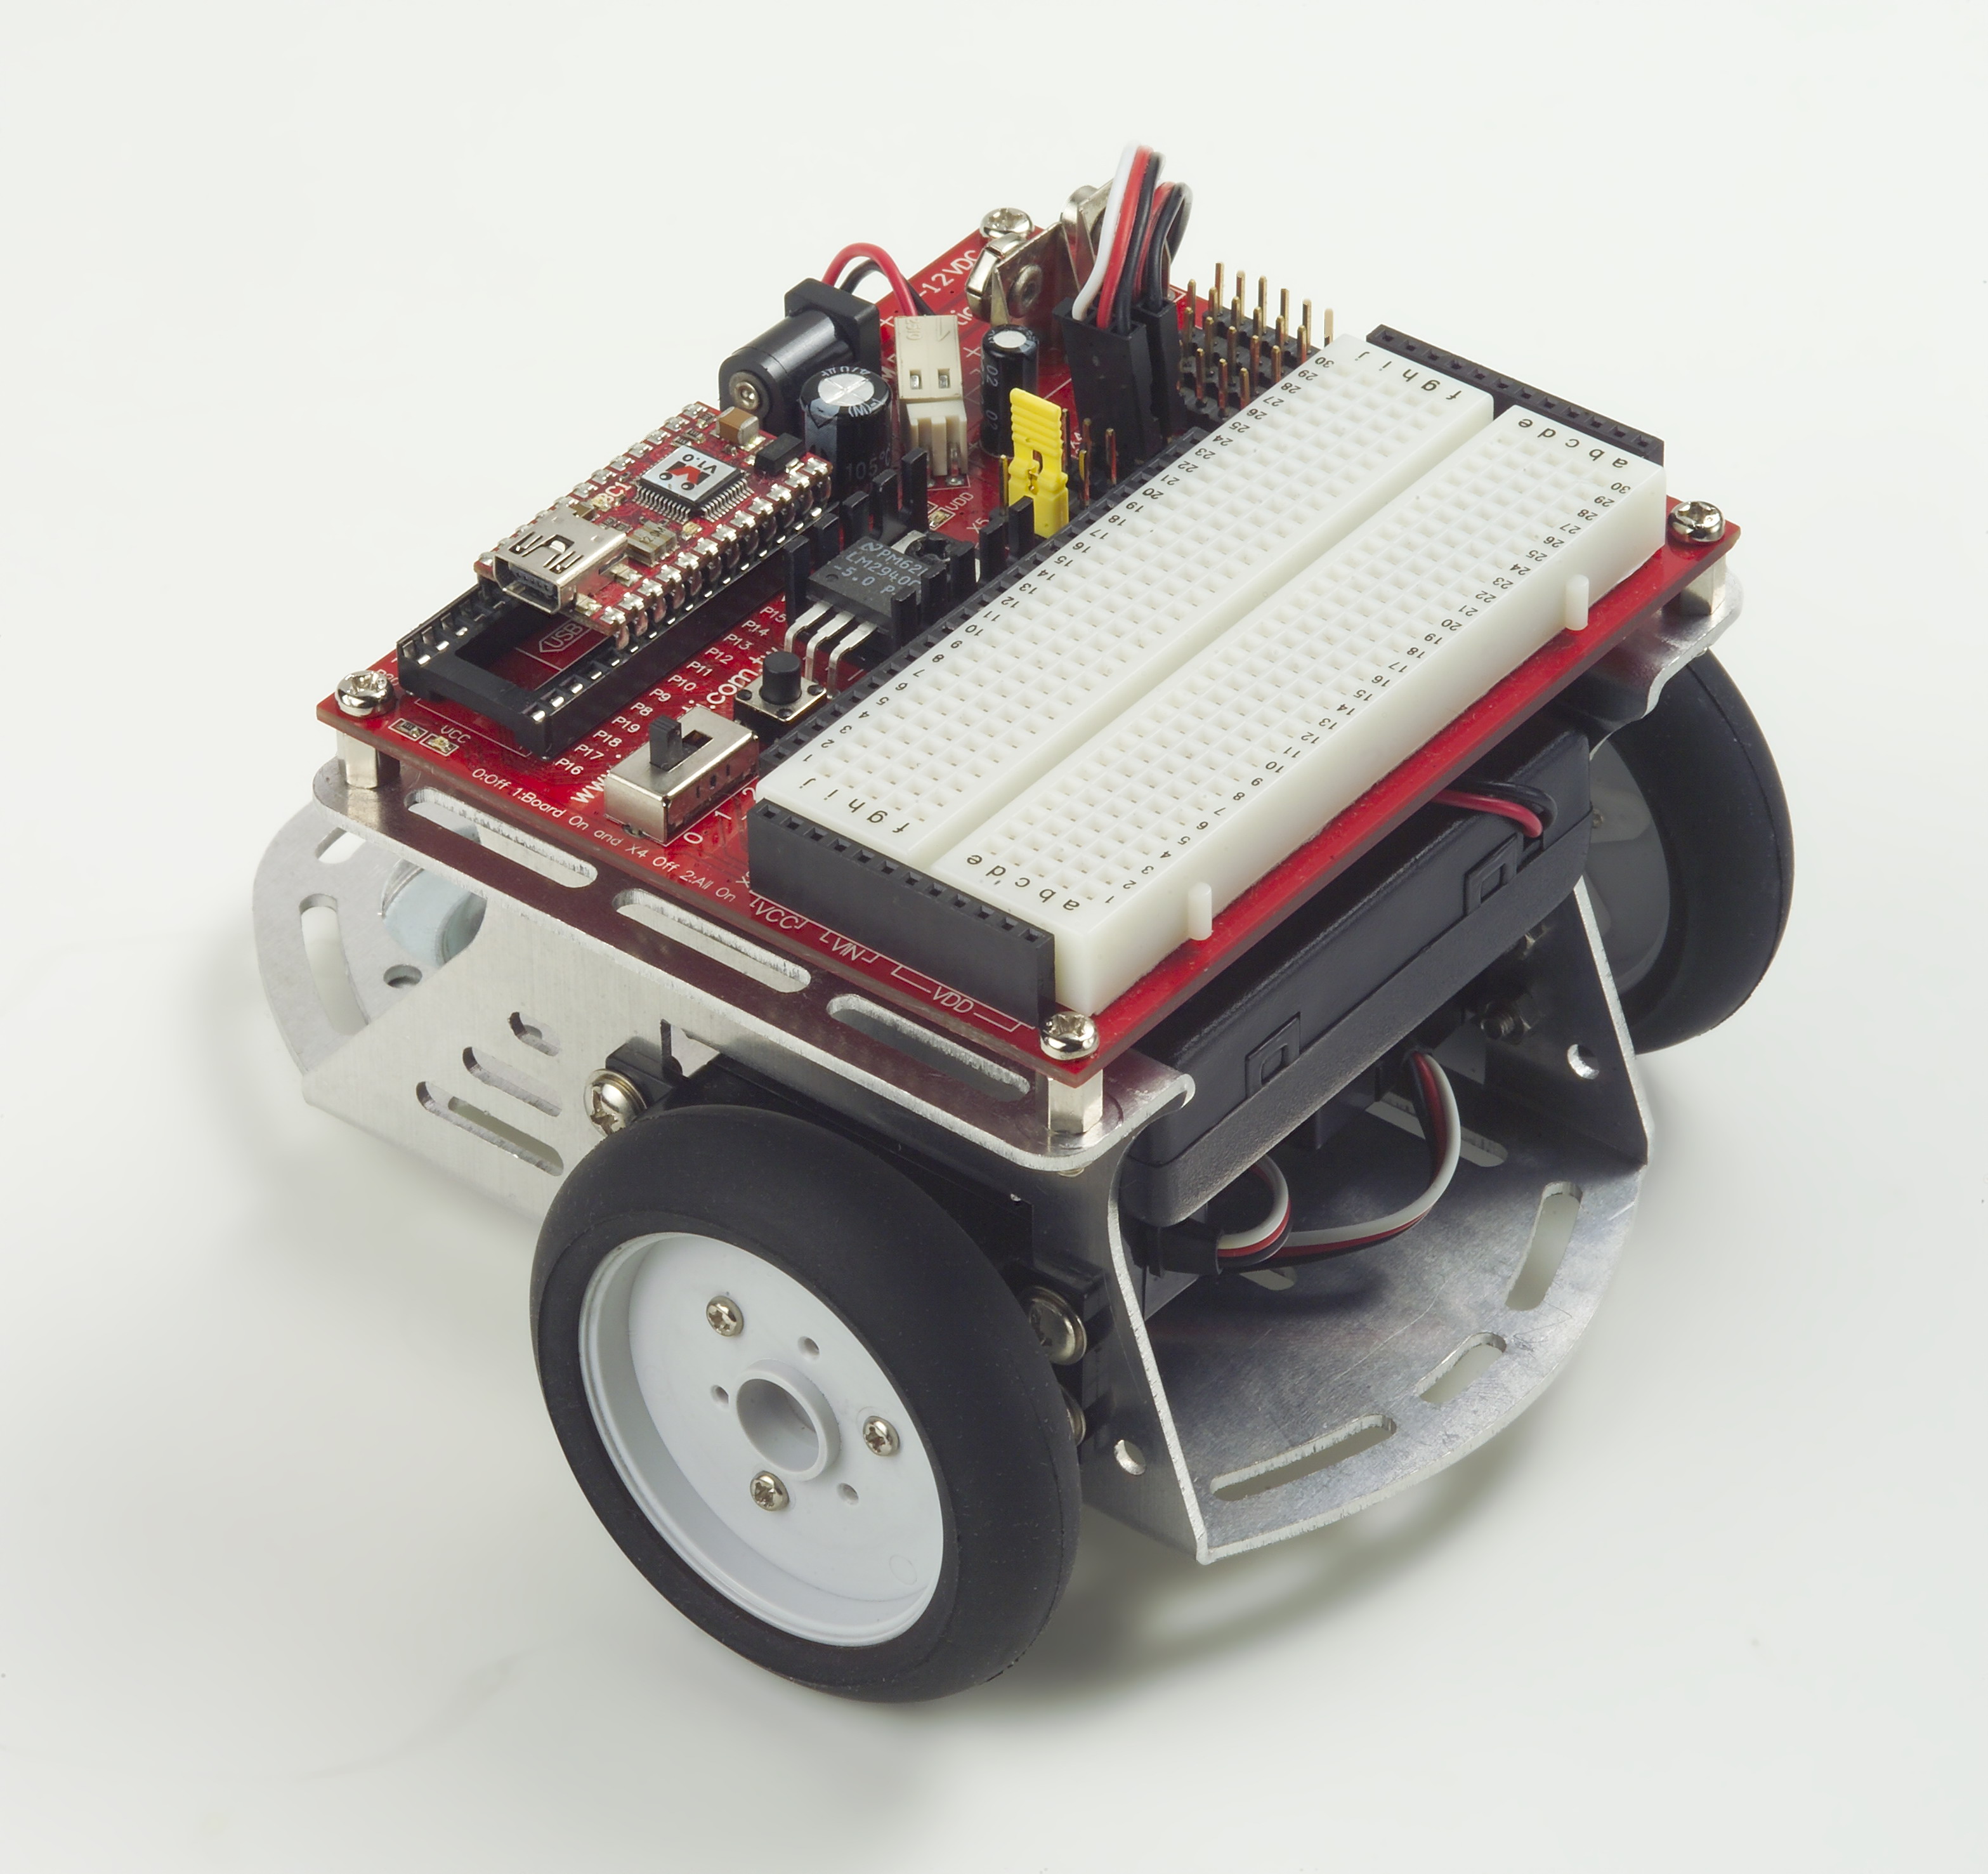 Kit personal de Electrónica Básica II - Roboteach